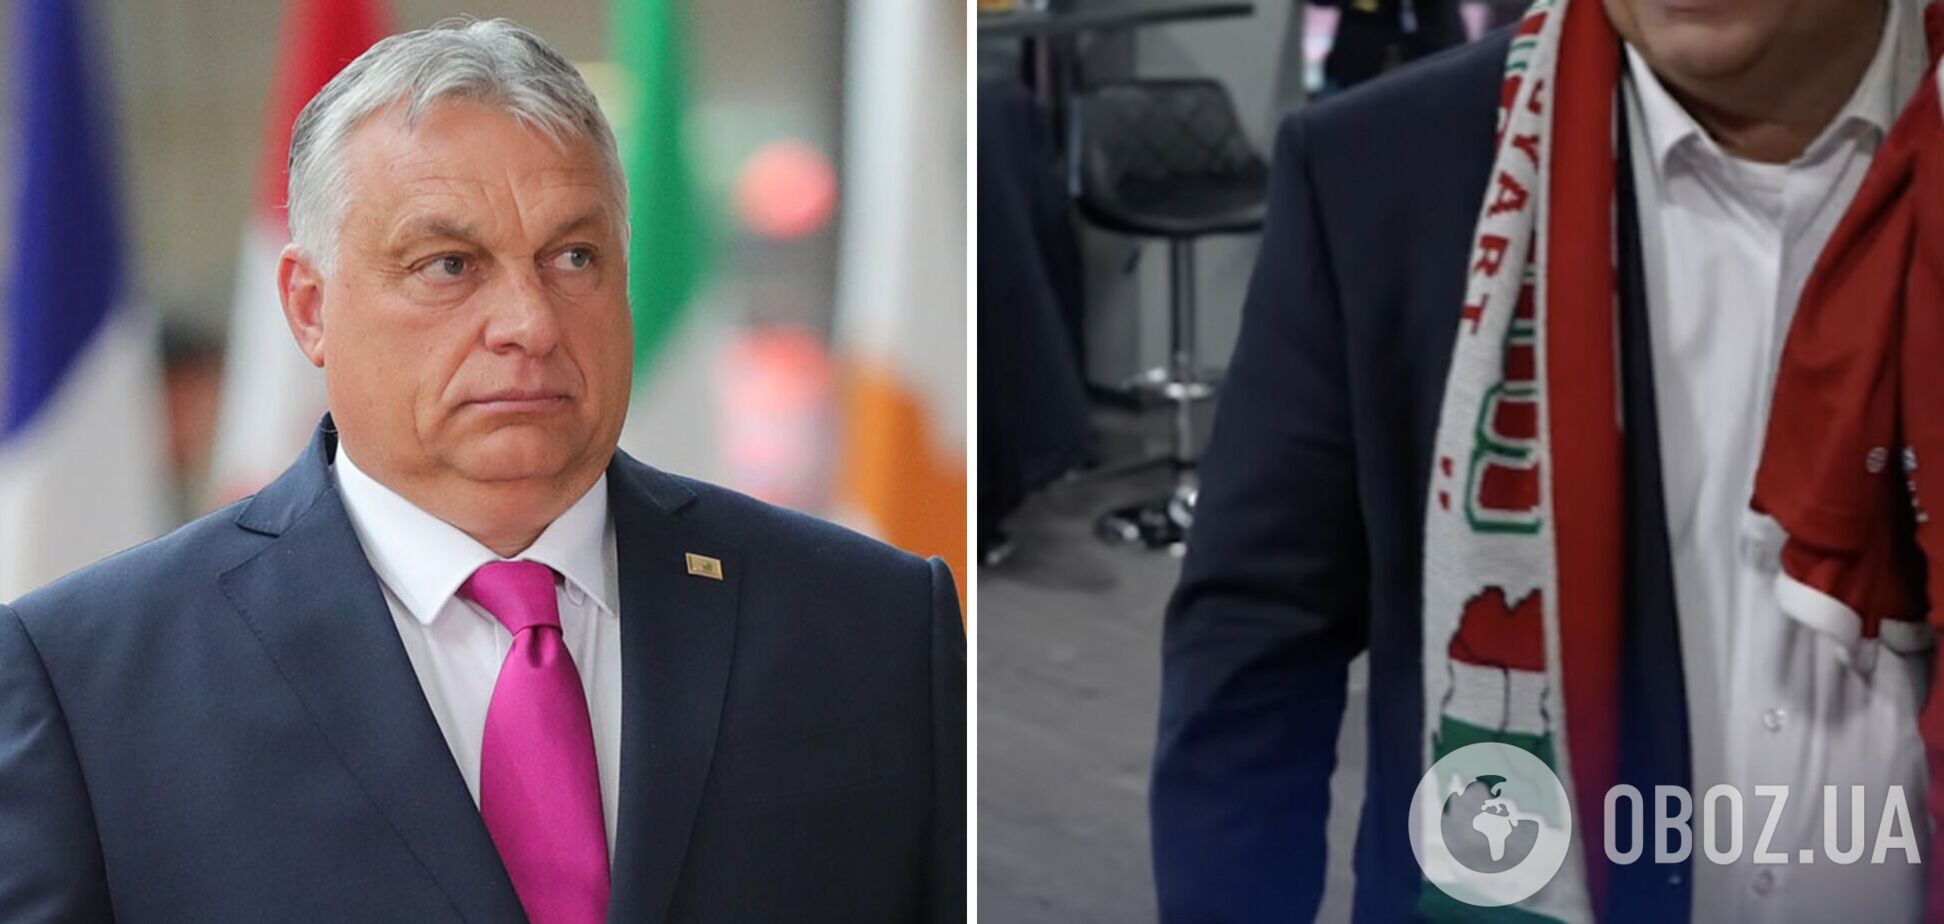 Орбан потрапив у гучний скандал через шарф із зображенням 'Великої Угорщини', до складу якої 'включили' частини Румунії та України. Фото 